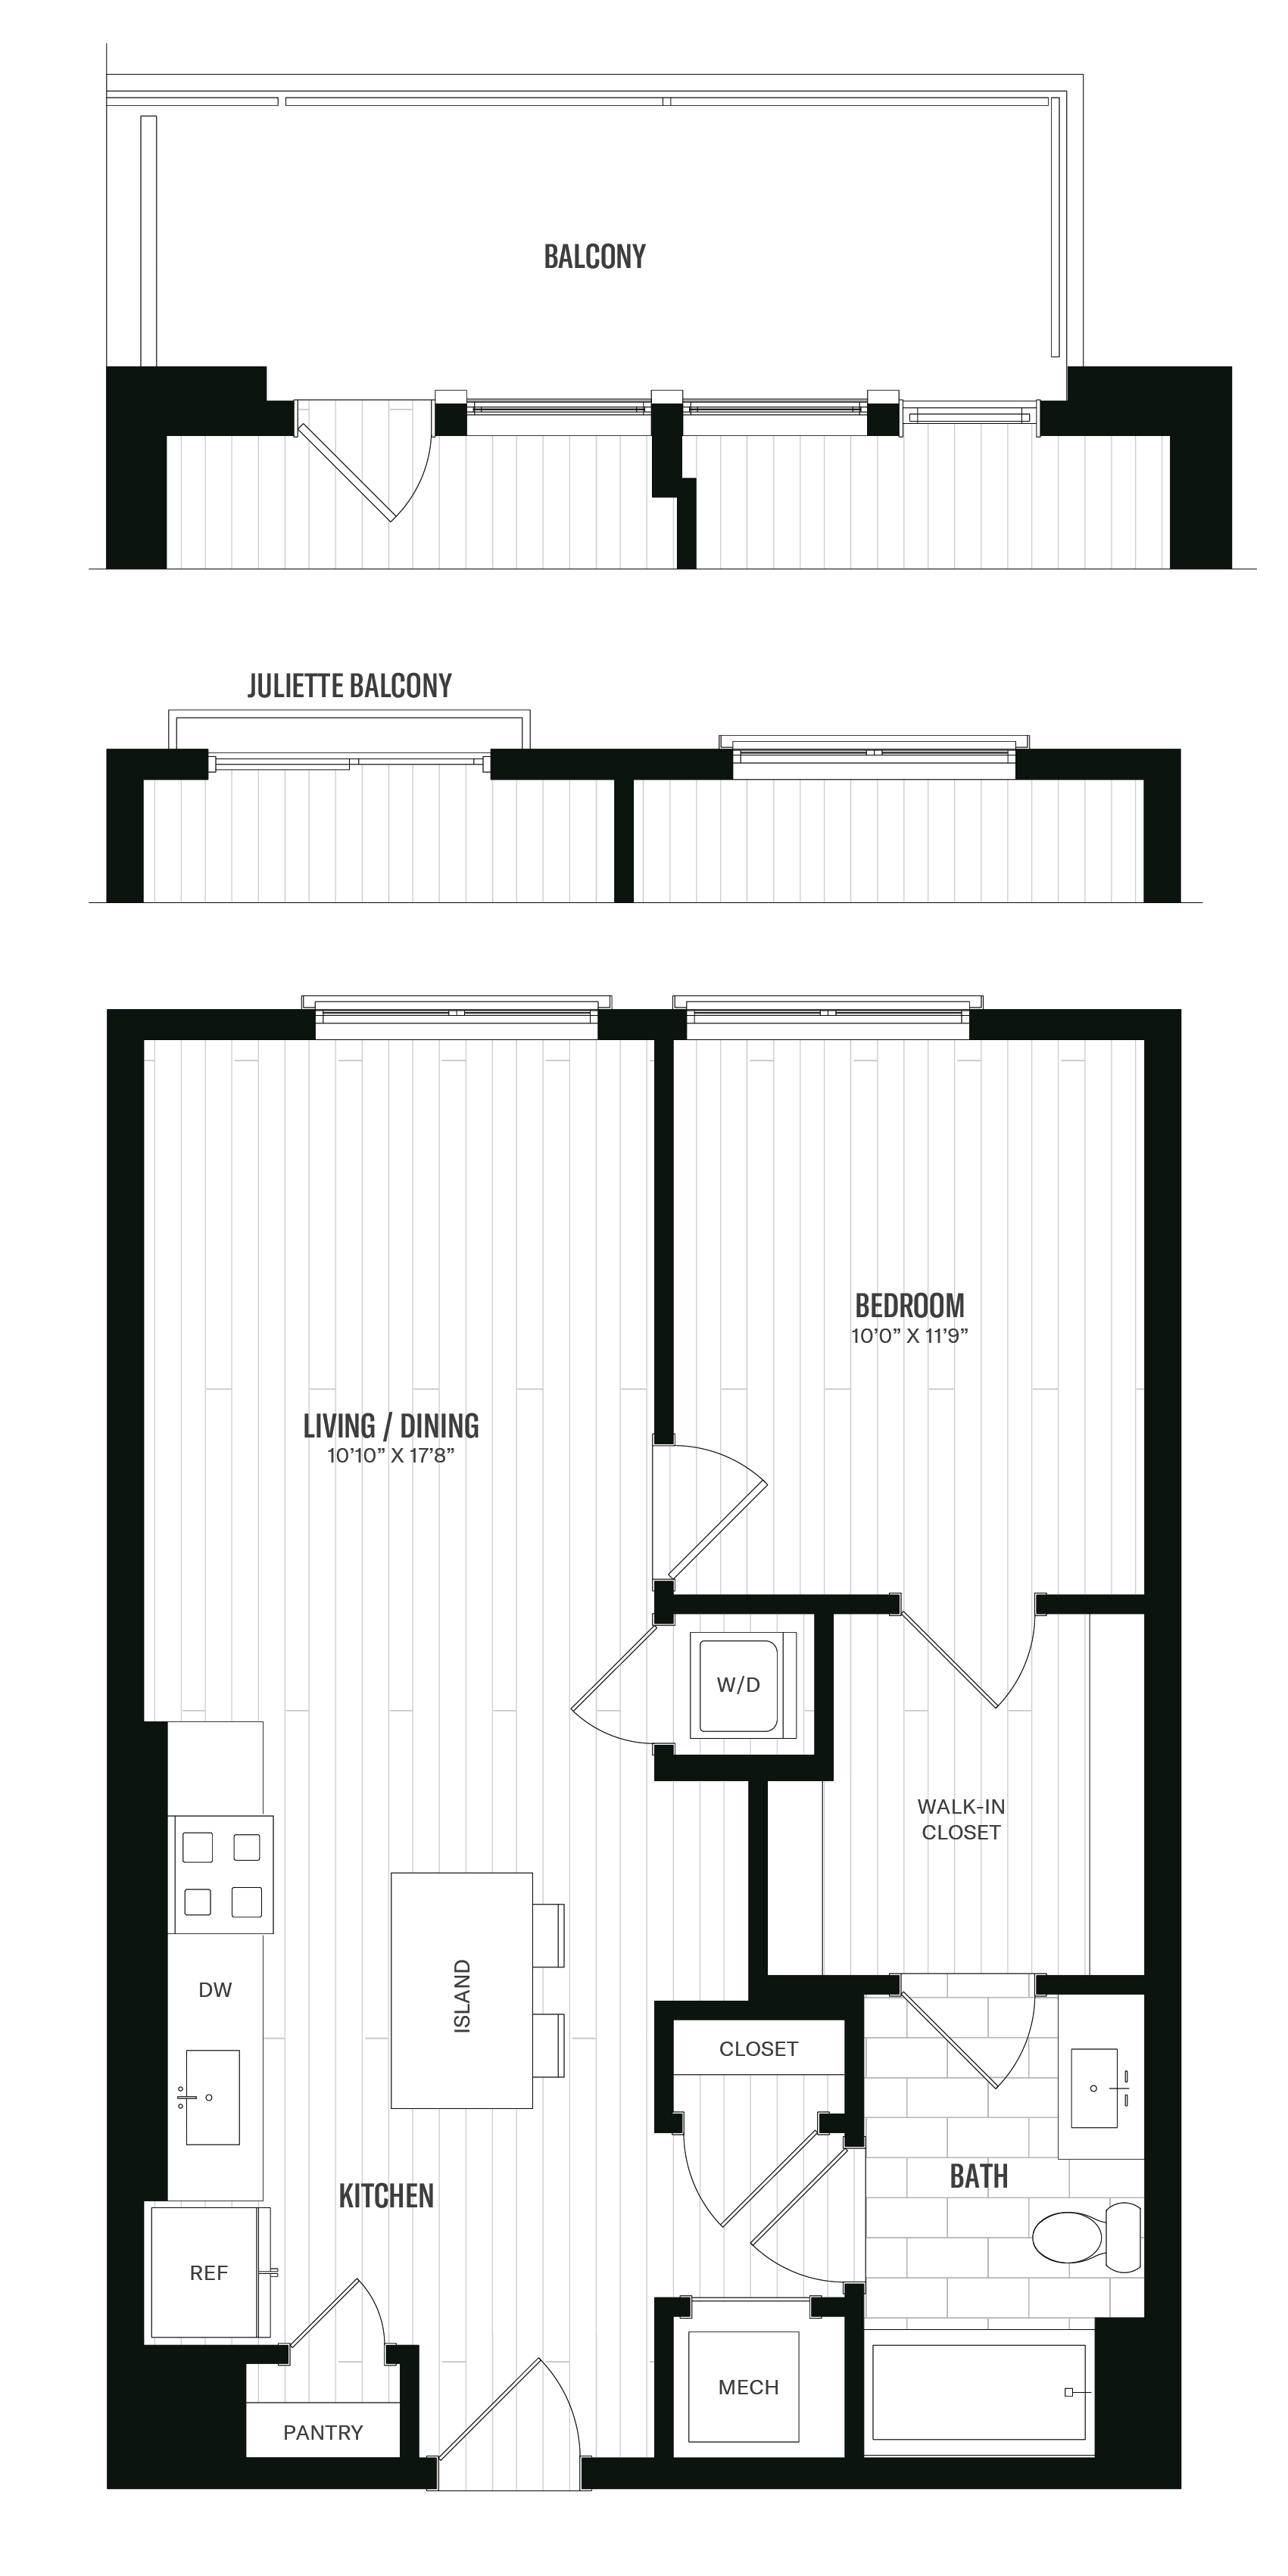 Floorplan image of unit 341